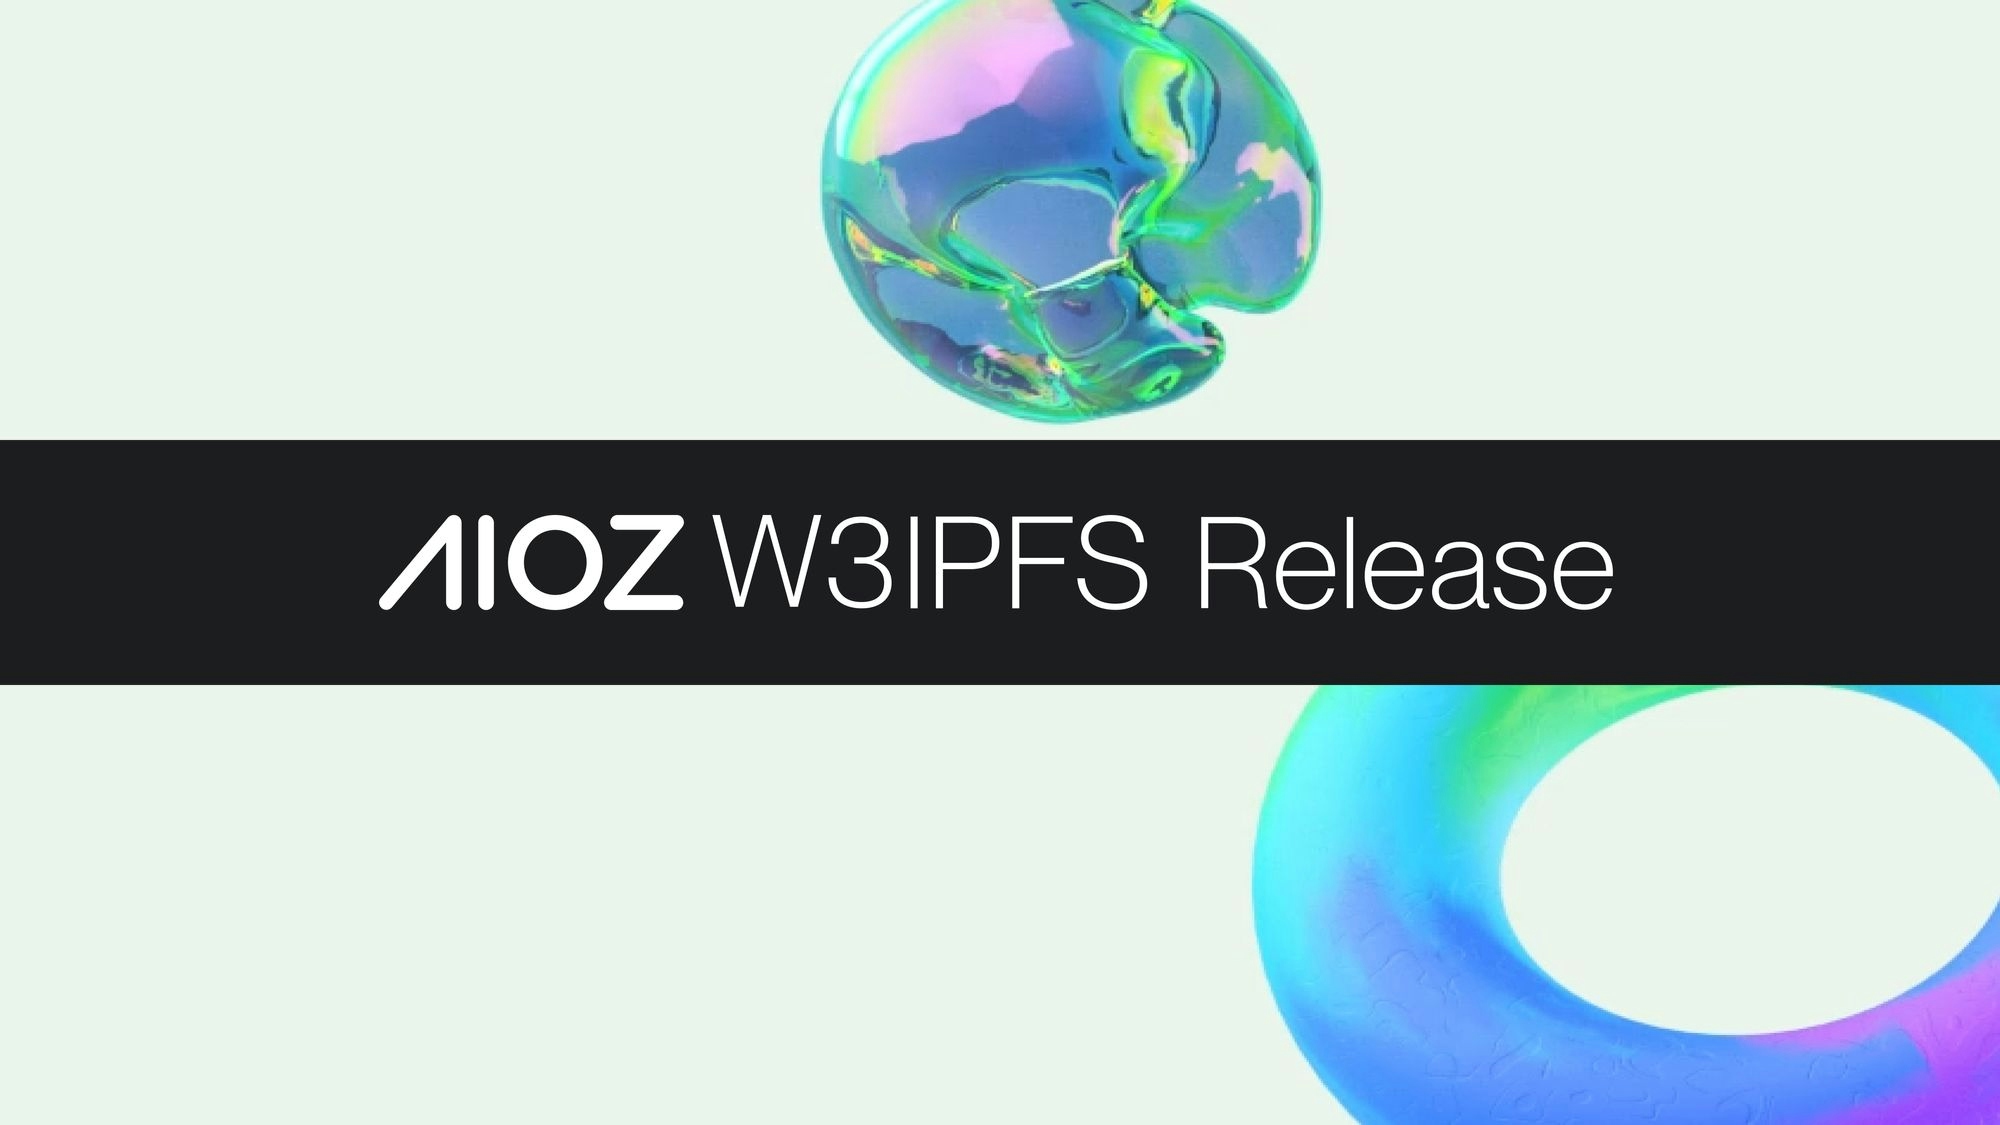 AIOZ W3IPFS Launch